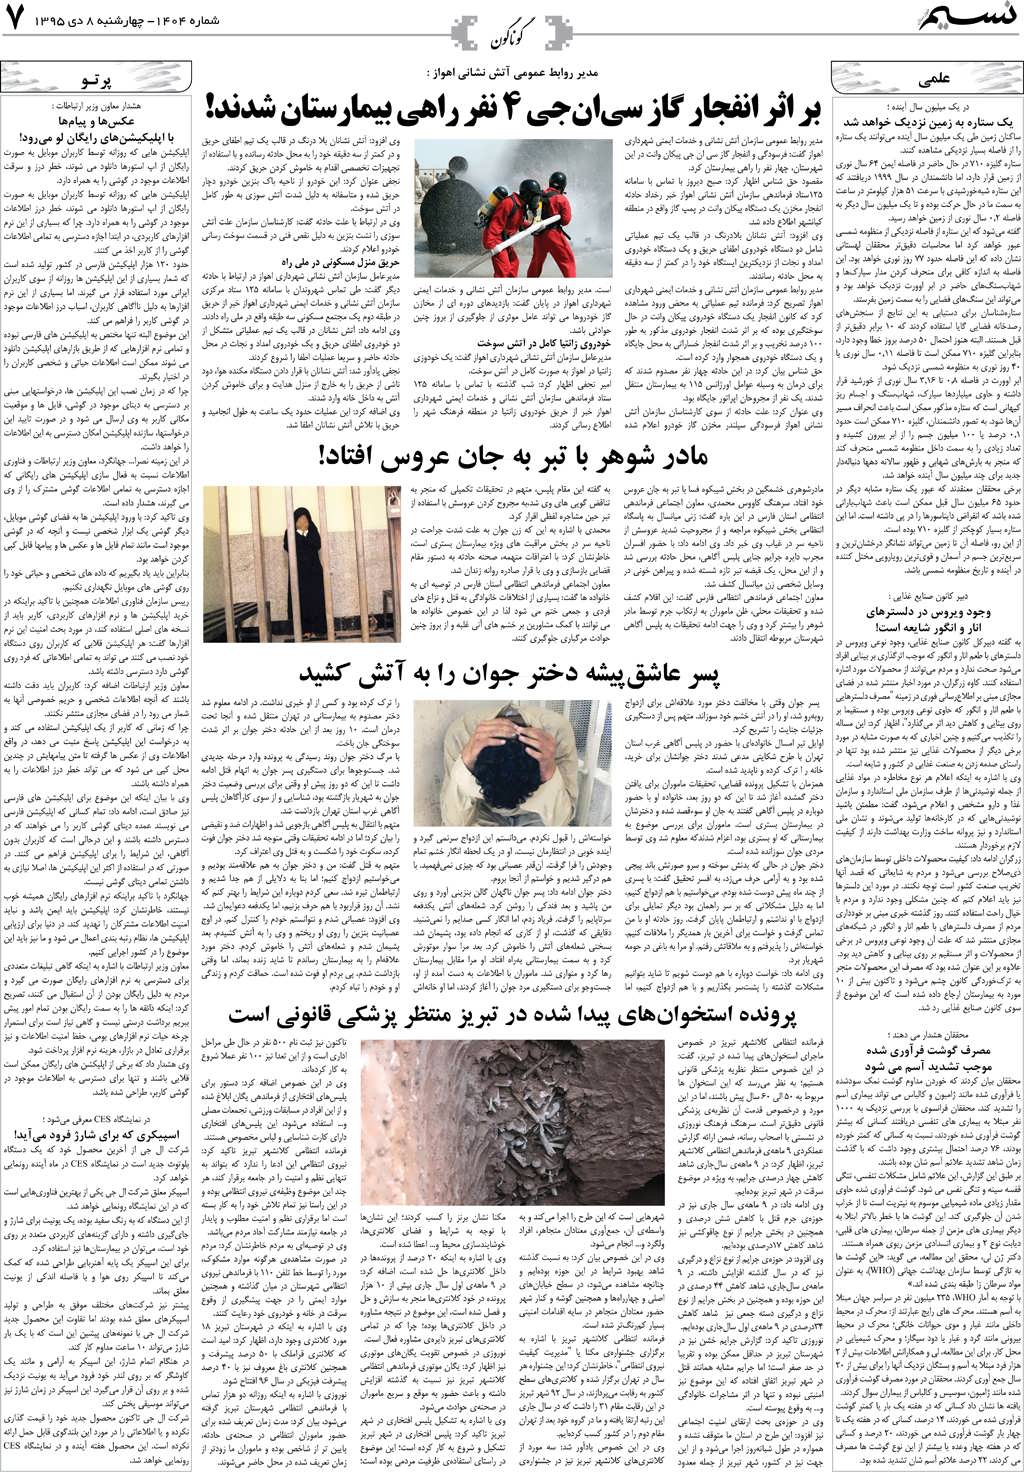 صفحه گوناگون روزنامه نسیم شماره 1404